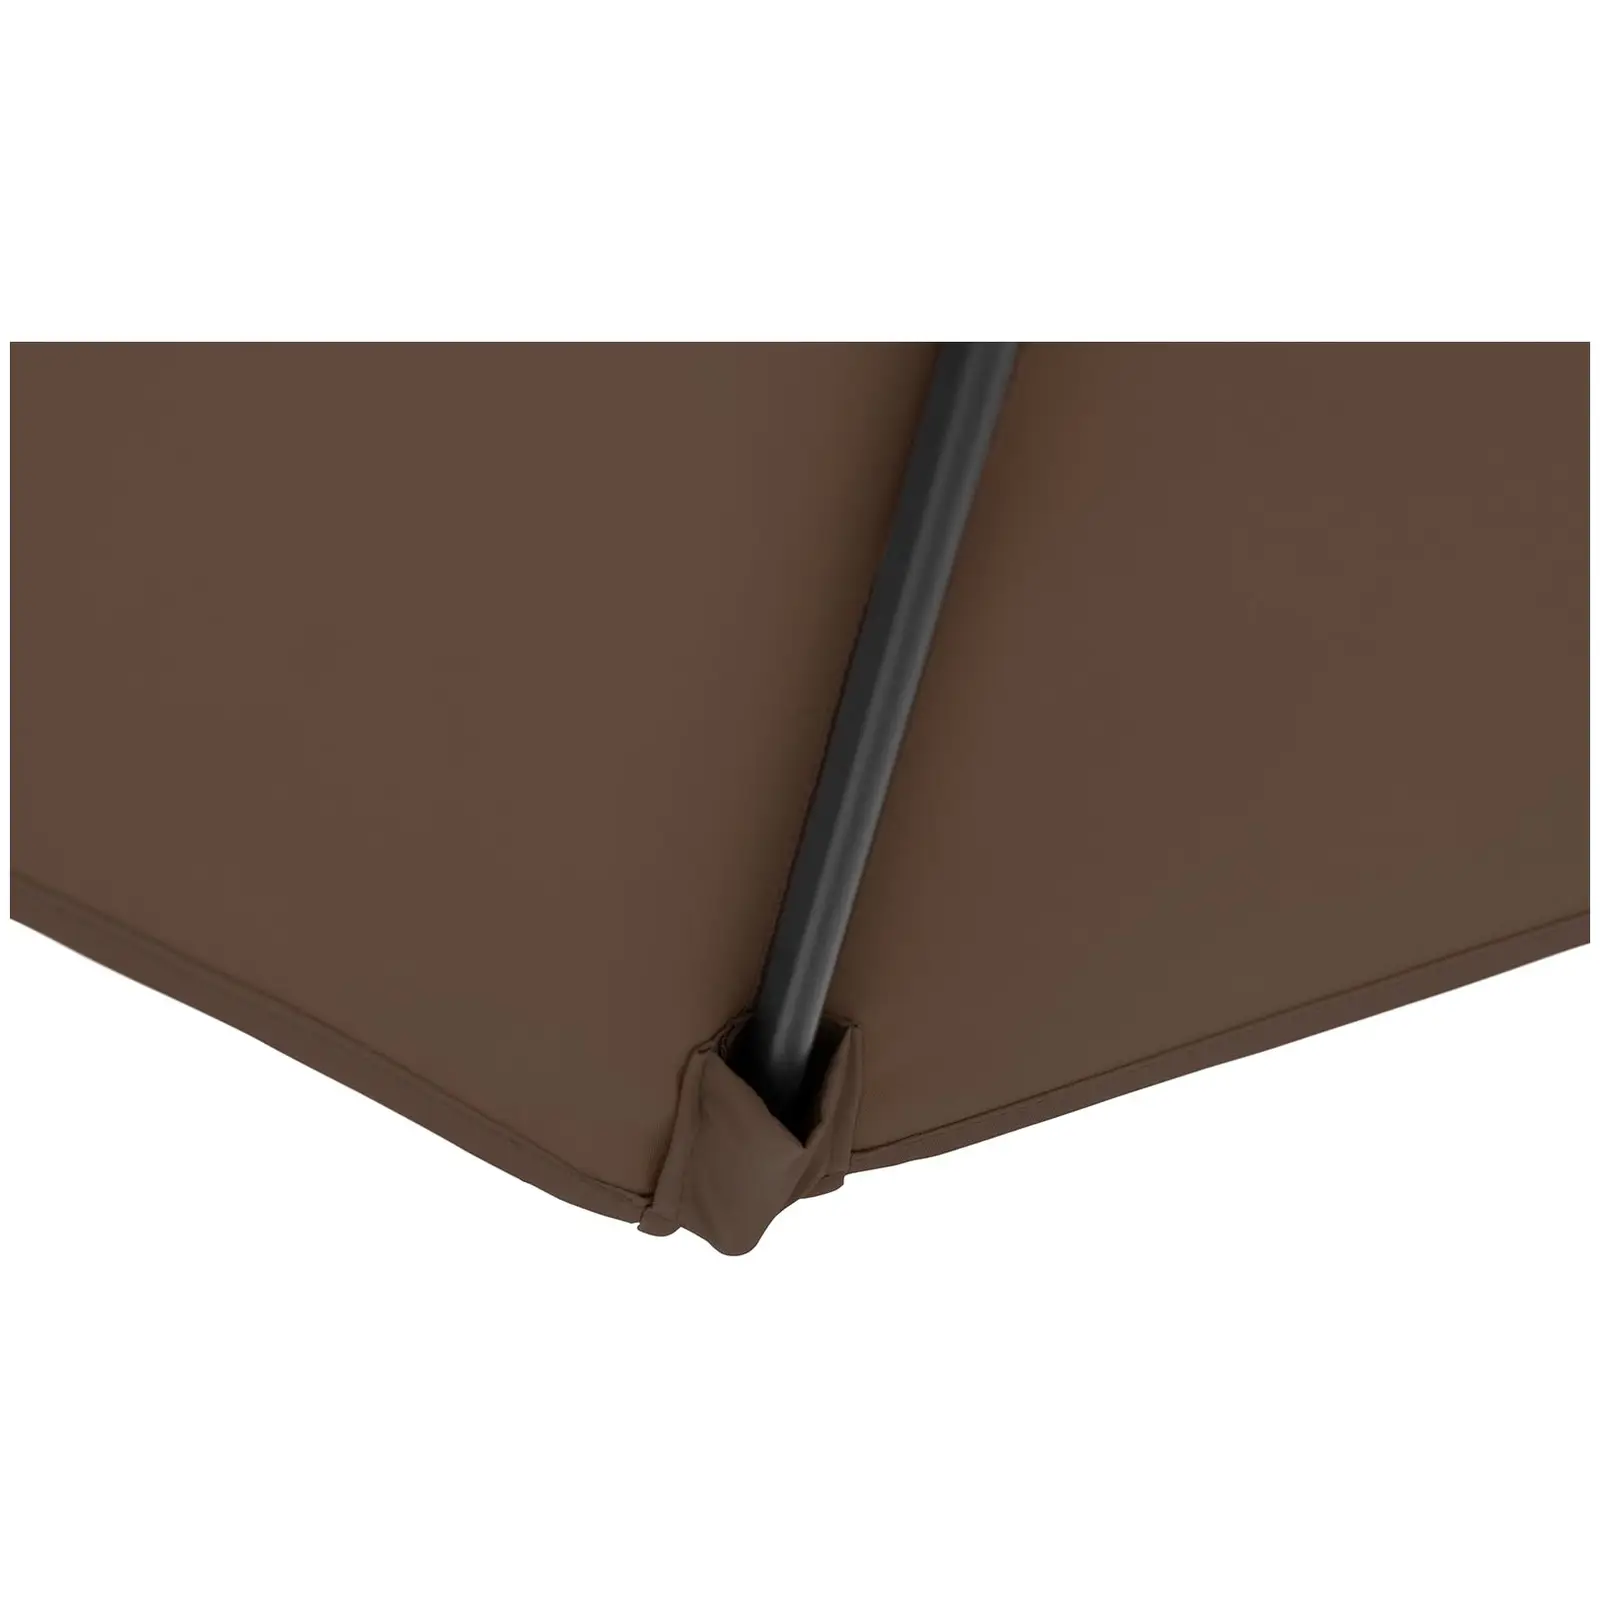 B-varer Stor parasoll - brun - rektangulær - 200 x 300 cm